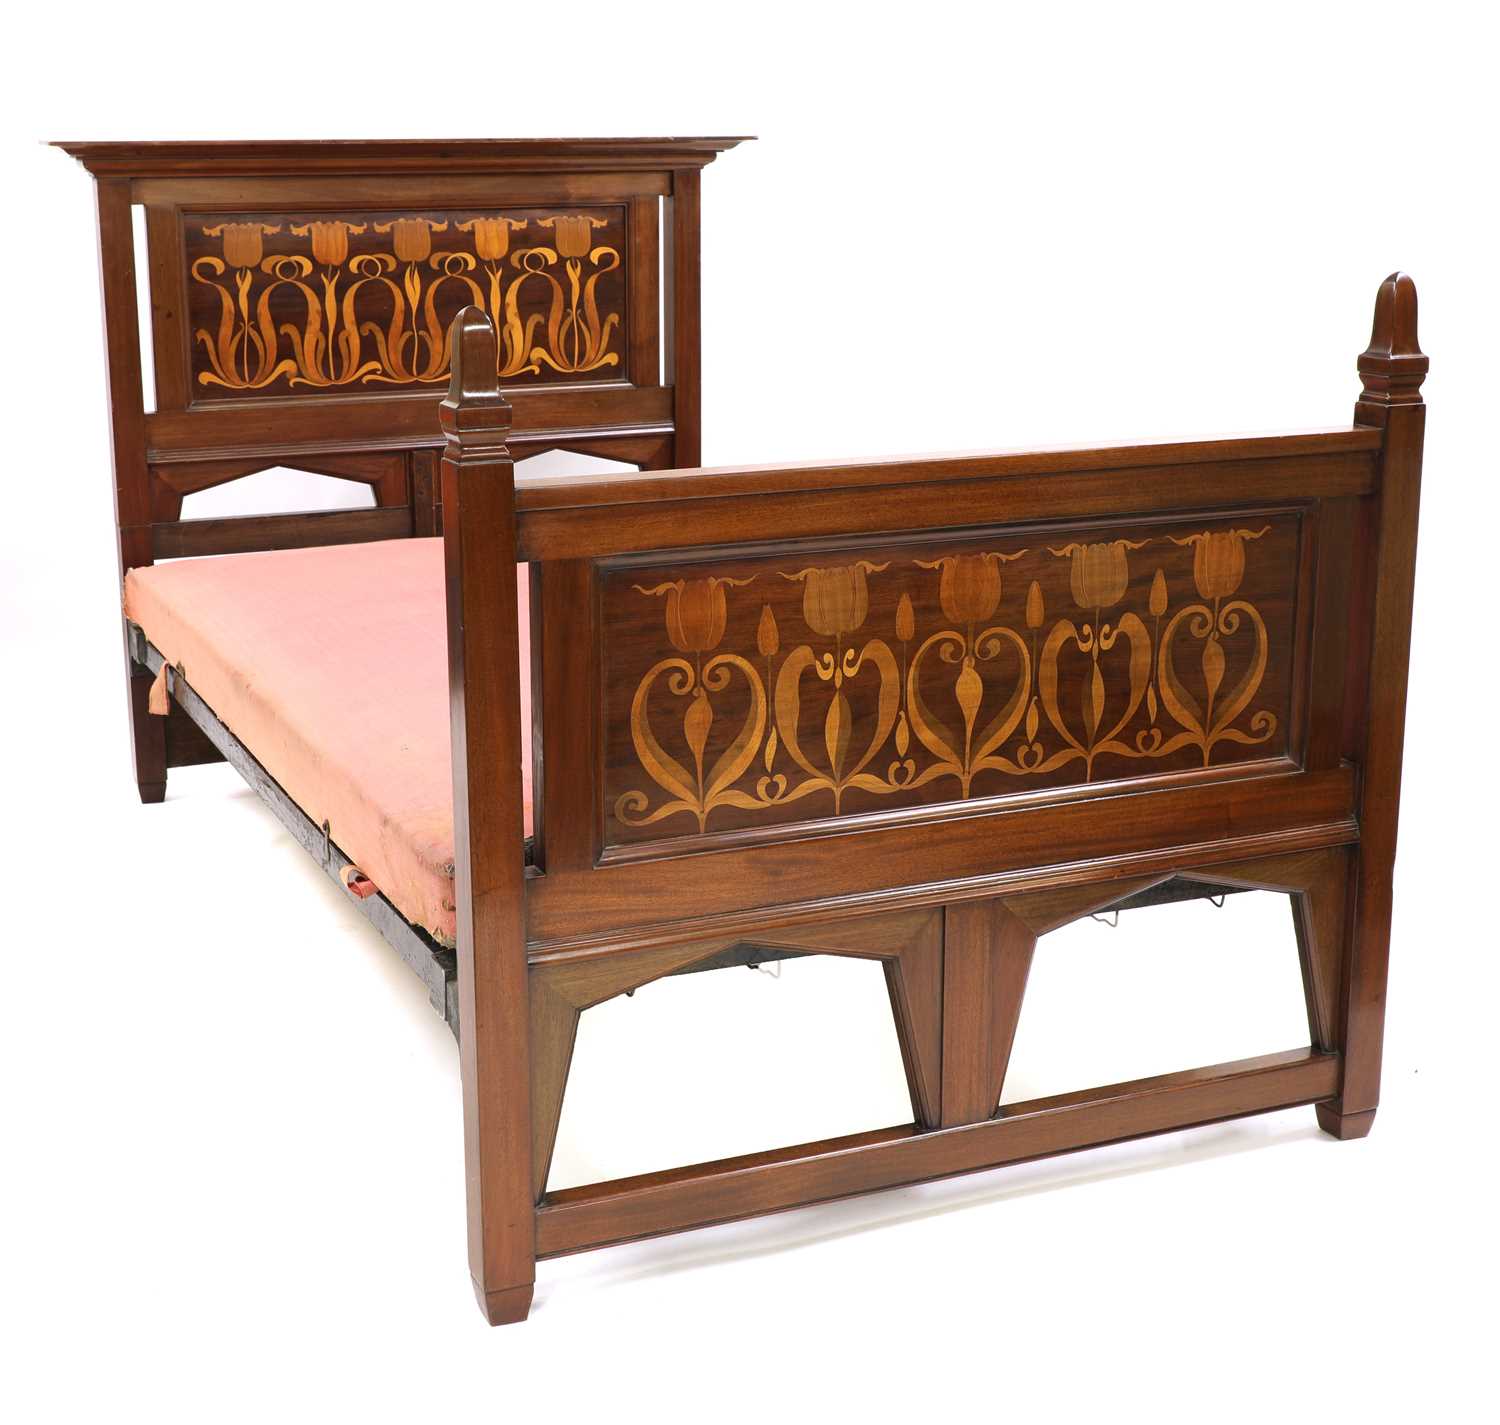 A mahogany inlaid bed, - Image 2 of 2